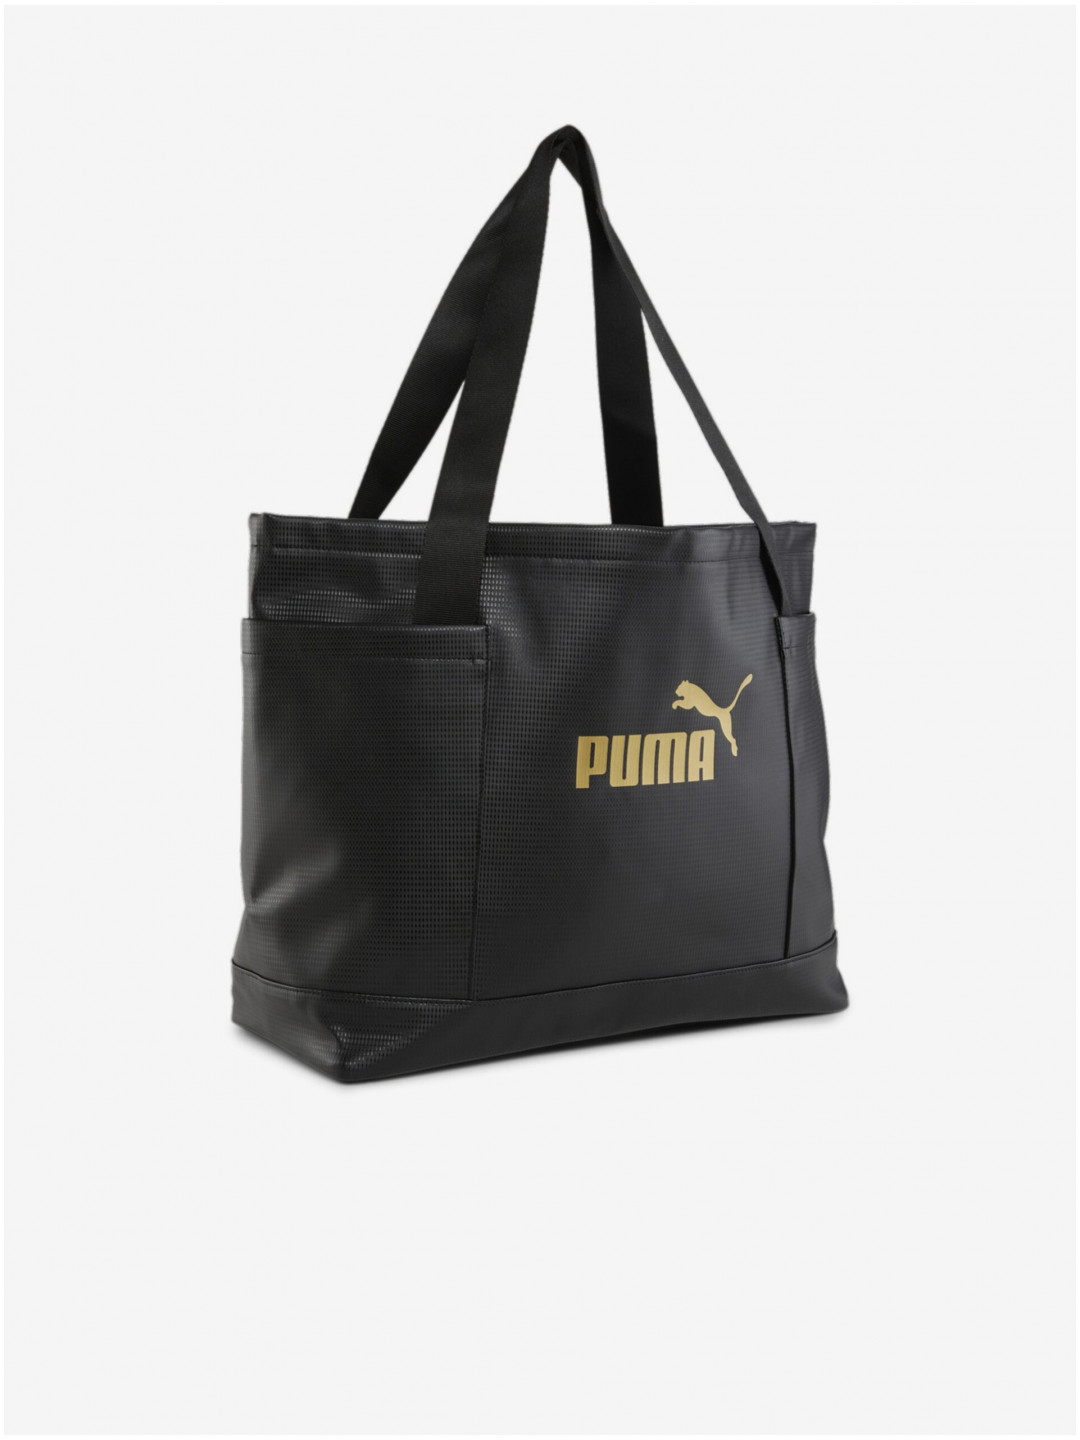 Černá dámská taška Puma Core Up Large Shopper